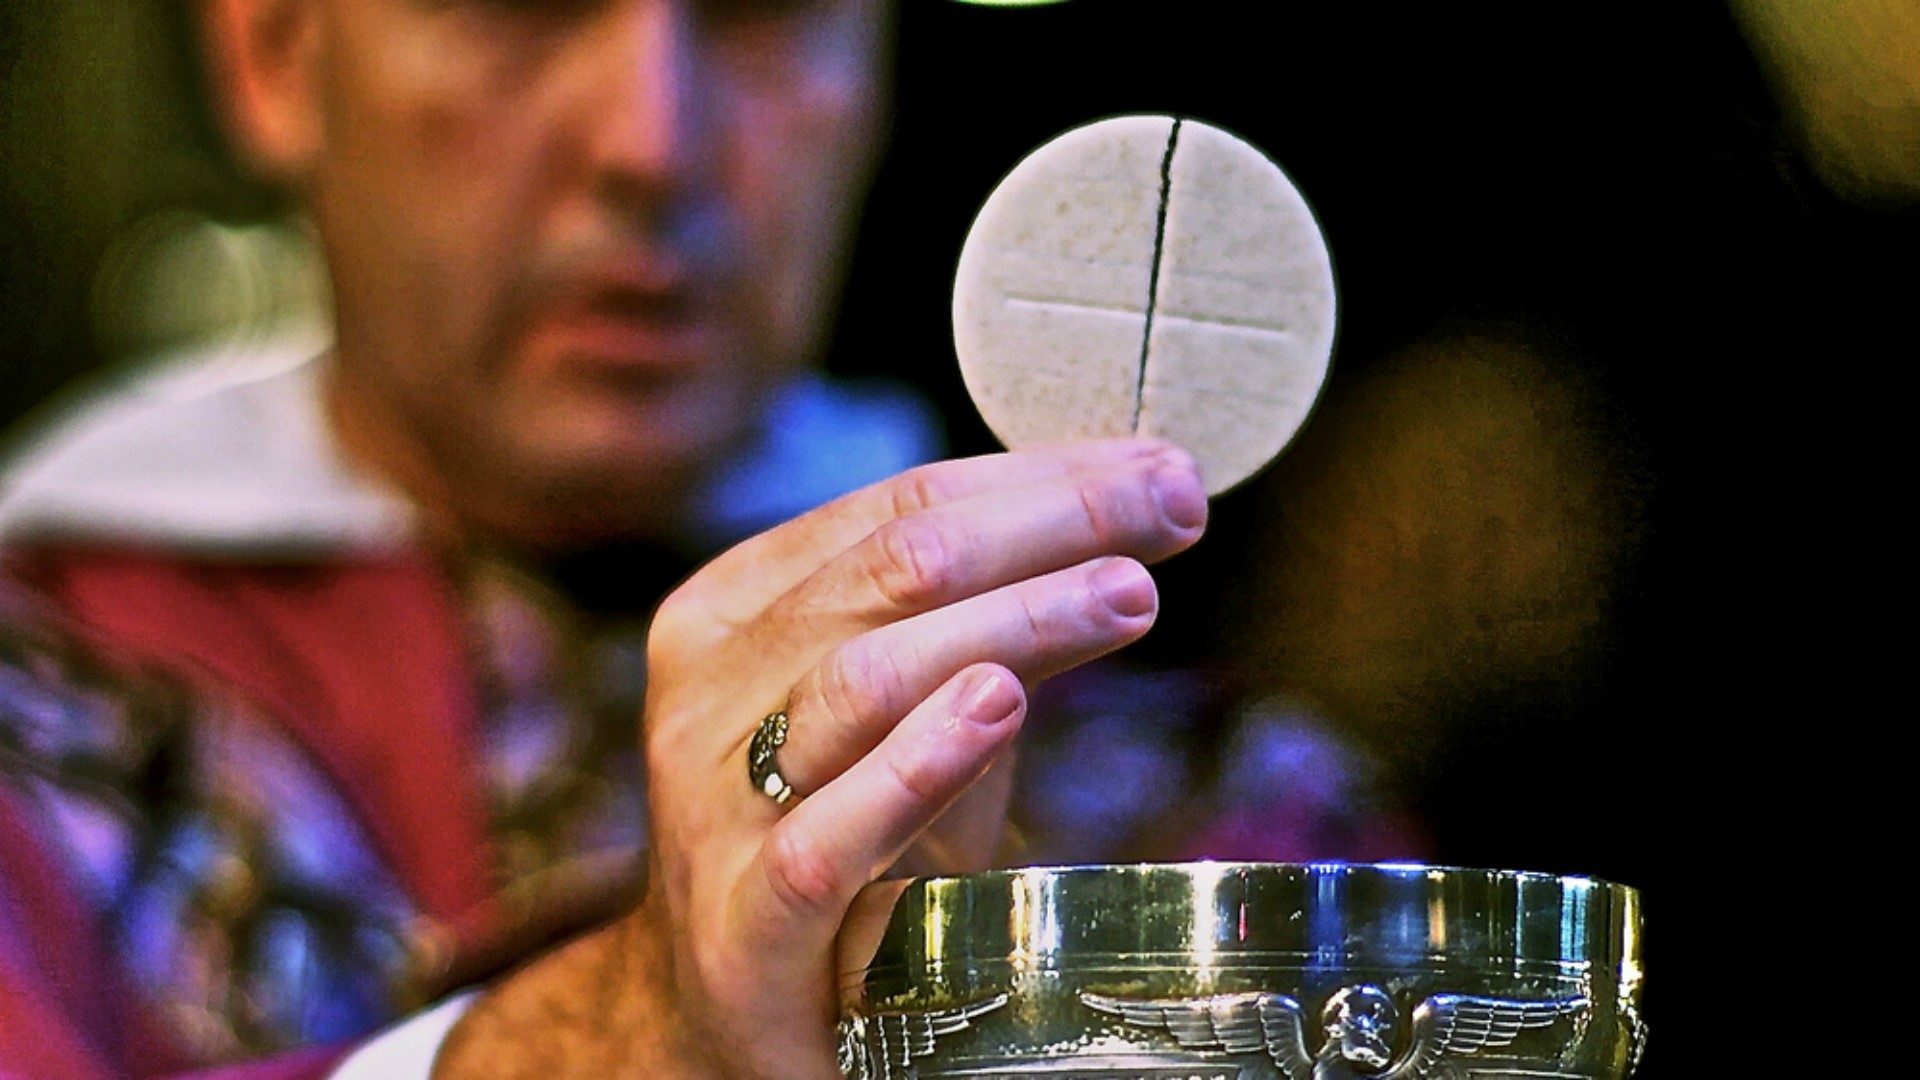 La possibilité pour des protestants de prendre la communion fait débat (Photo: Saint Joseph/Flickr/CC BY-NC-ND 2.0)